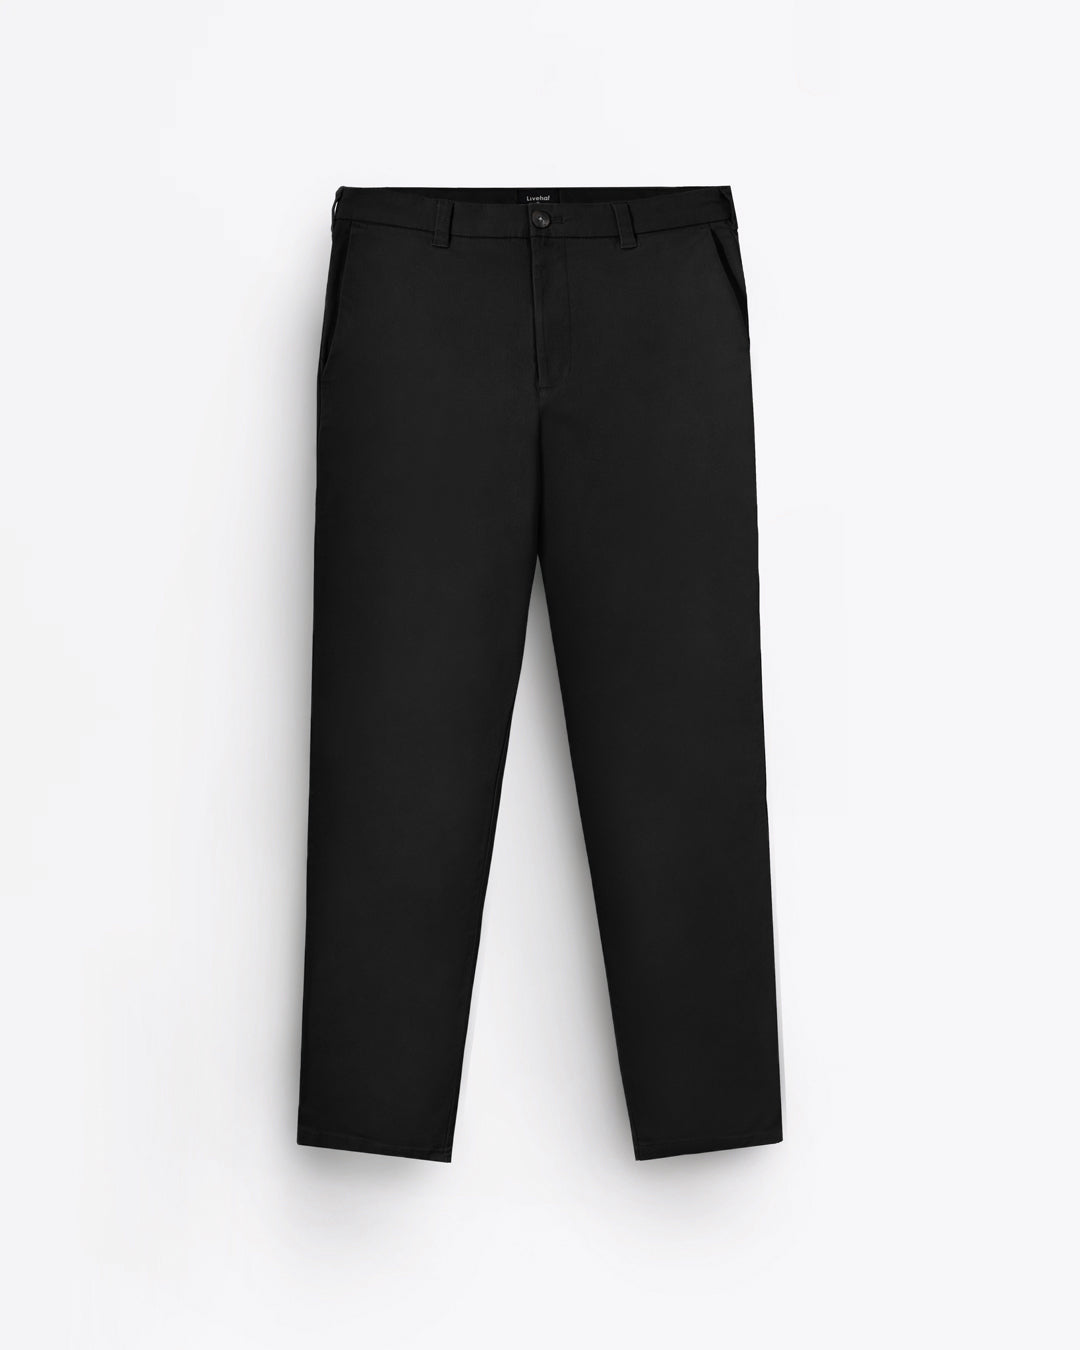 Essential Chino Pants Black